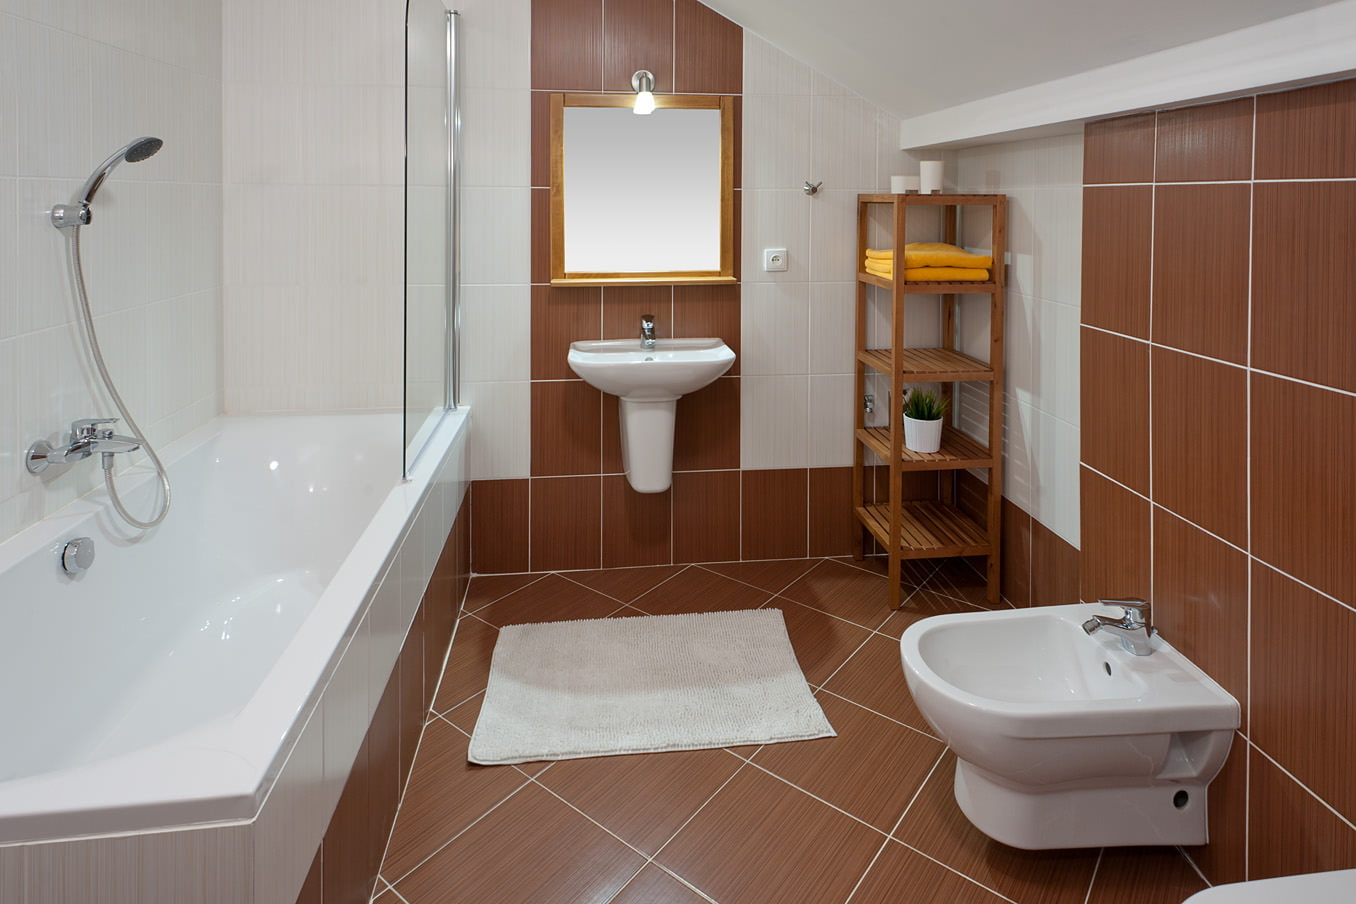 отделка совмещенной ванной комнаты плиткой фото дизайн